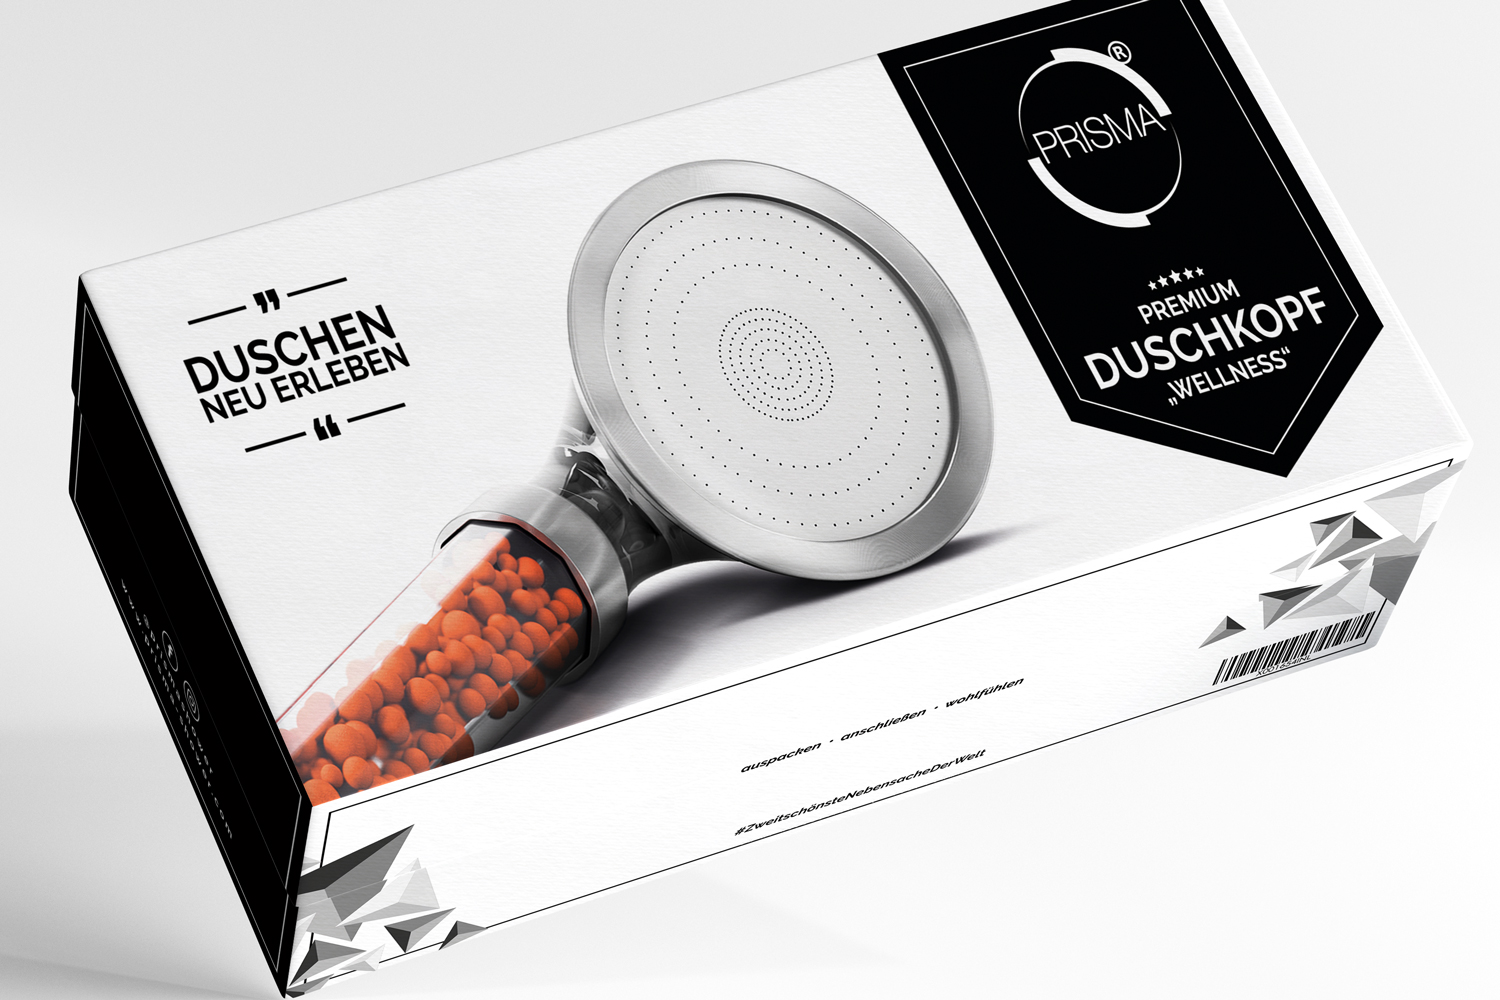 Prisma Edelstahlscheibe Geschenkverpackung 3 - PRISMA Premium Duschkopf für ein einzigartiges Duscherlebnis